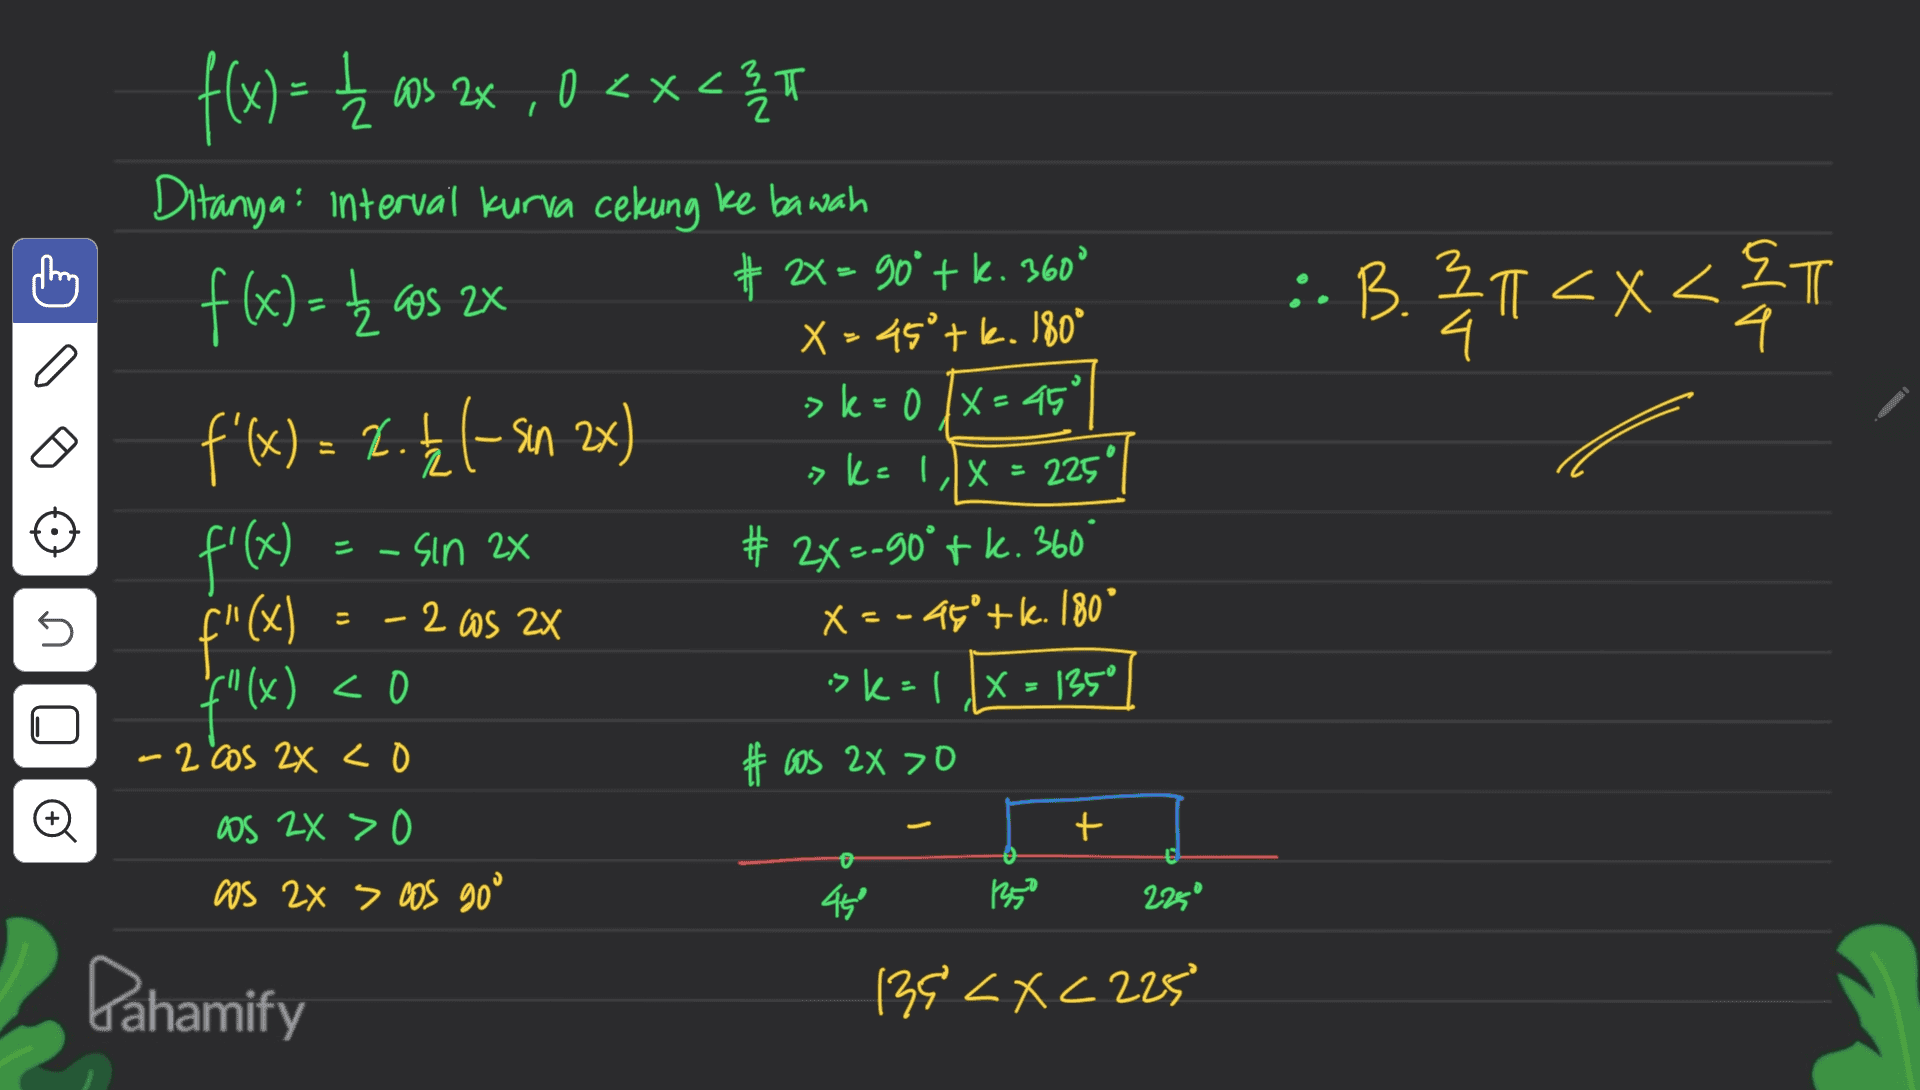 C돌 f(x) = { ms 22 , 0<x< Ź os <x<3 T Ditanya: interval kurva cekung ke bawah f(x)= k as 2x # 2> 90° tk. 360 X = 45°tk. 180° f'(x) = 1.4 1-sin 2x f'(x) # 2X=-90°tk. 360 :. B.21<x<&T x22m 4. a 3 >k=0 /x=45° 2 > k=1/x = 225" -sin 2x 5 - = 2X - 2 Os 2x f"(x) X = -45+k. 180 f"(x) <0 ( sk=1 X=135° #tos 2x >O -2 cos 2x co Đ + OS ZX > 0 os 2x > cos goo 450 135 2250 Pahamify 139 <x<225 